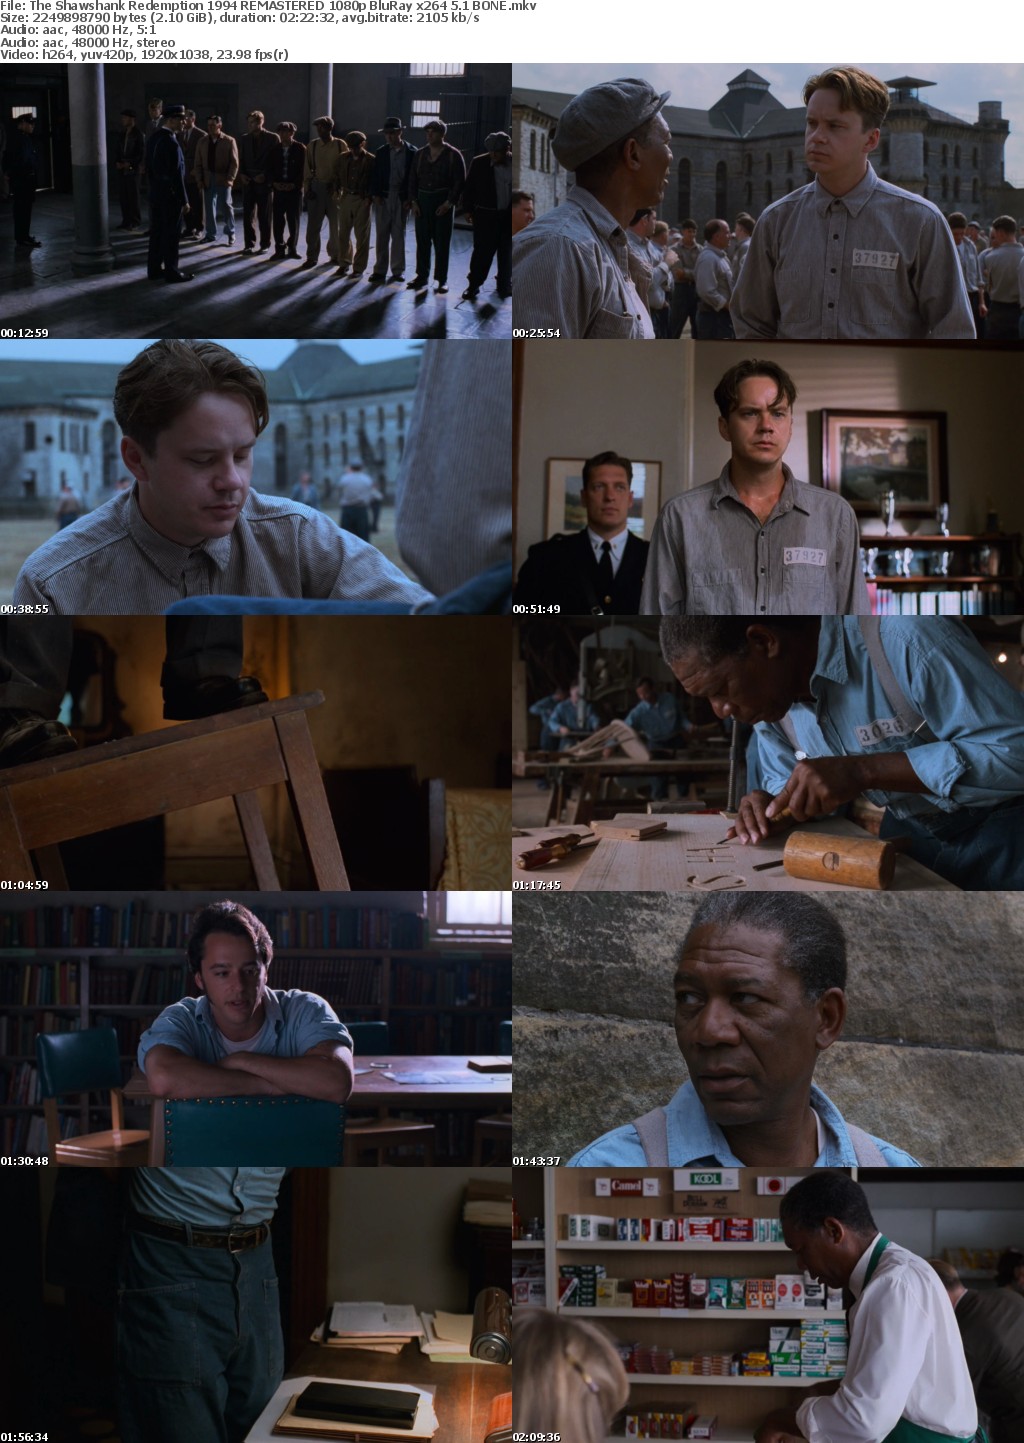 The Shawshank Redemption 1994 REMASTERED 1080p BluRay x264 5 1 BONE